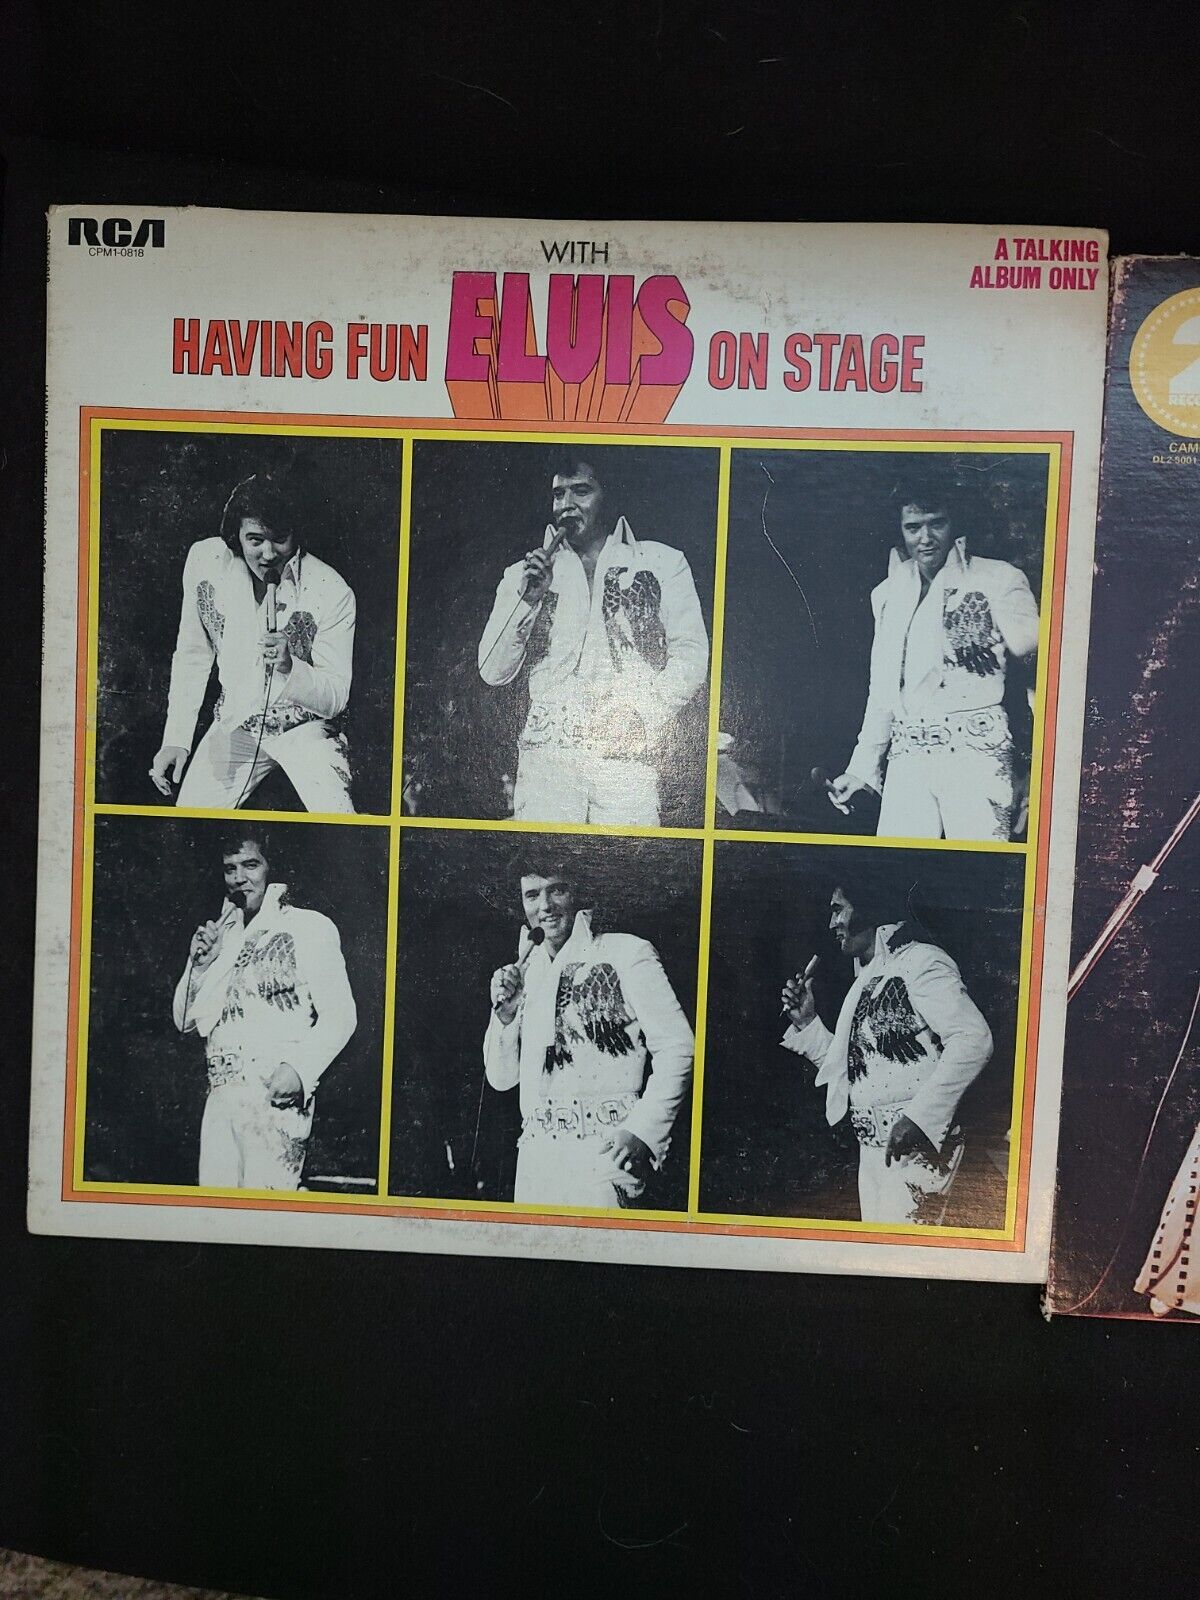 🎵 Elvis Presley – Having Fun With Elvis On Stage (1979, RCA Victor) Vinyl VG+